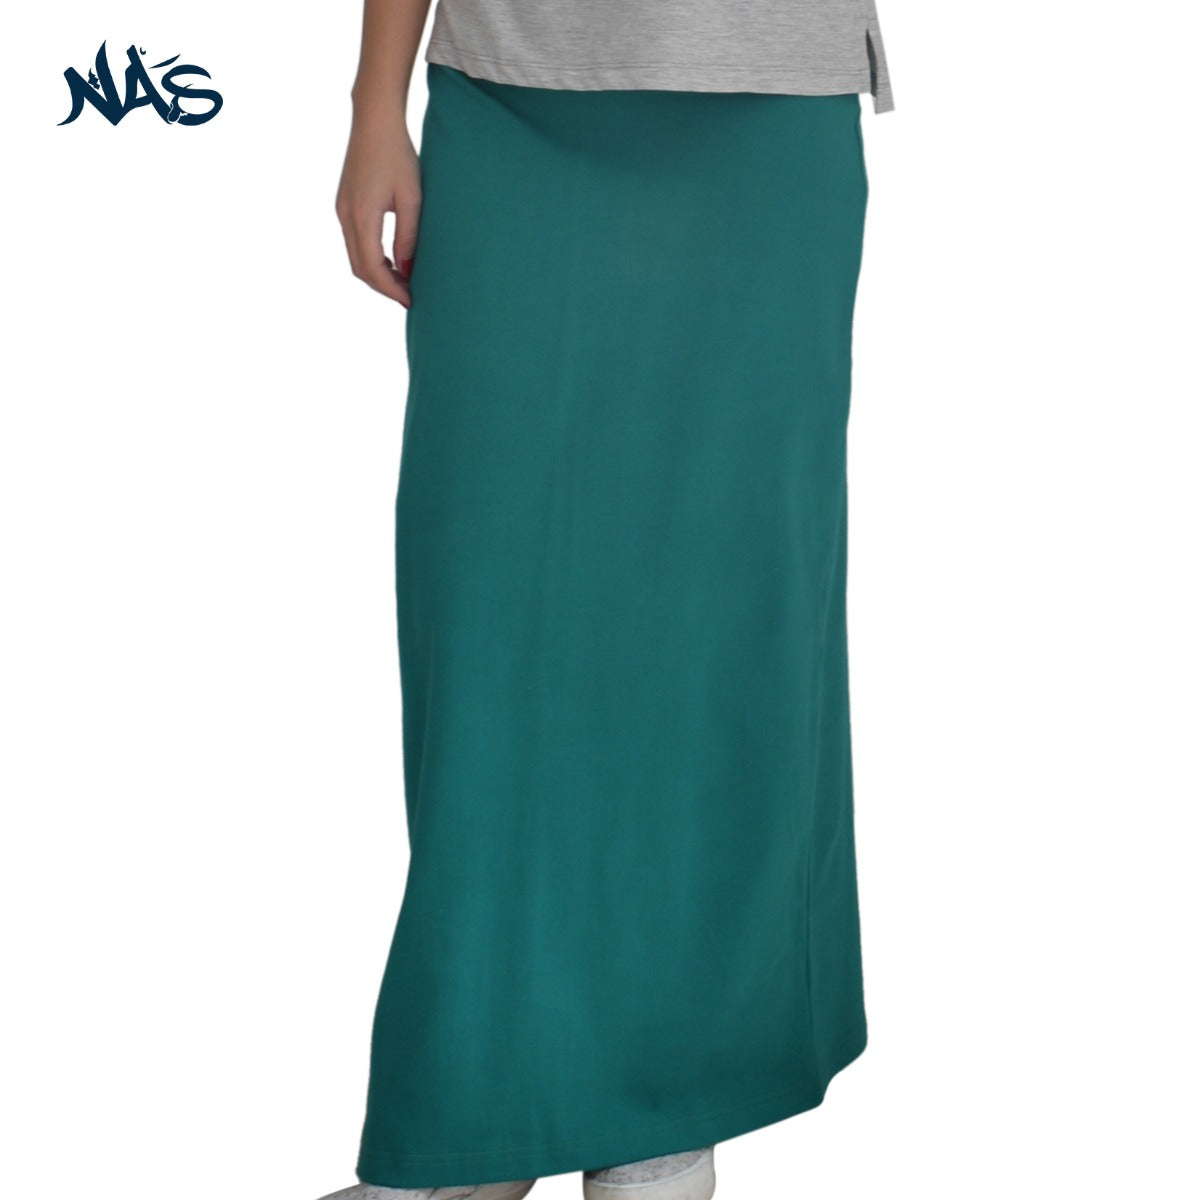 Basic Derby Skirt - Green